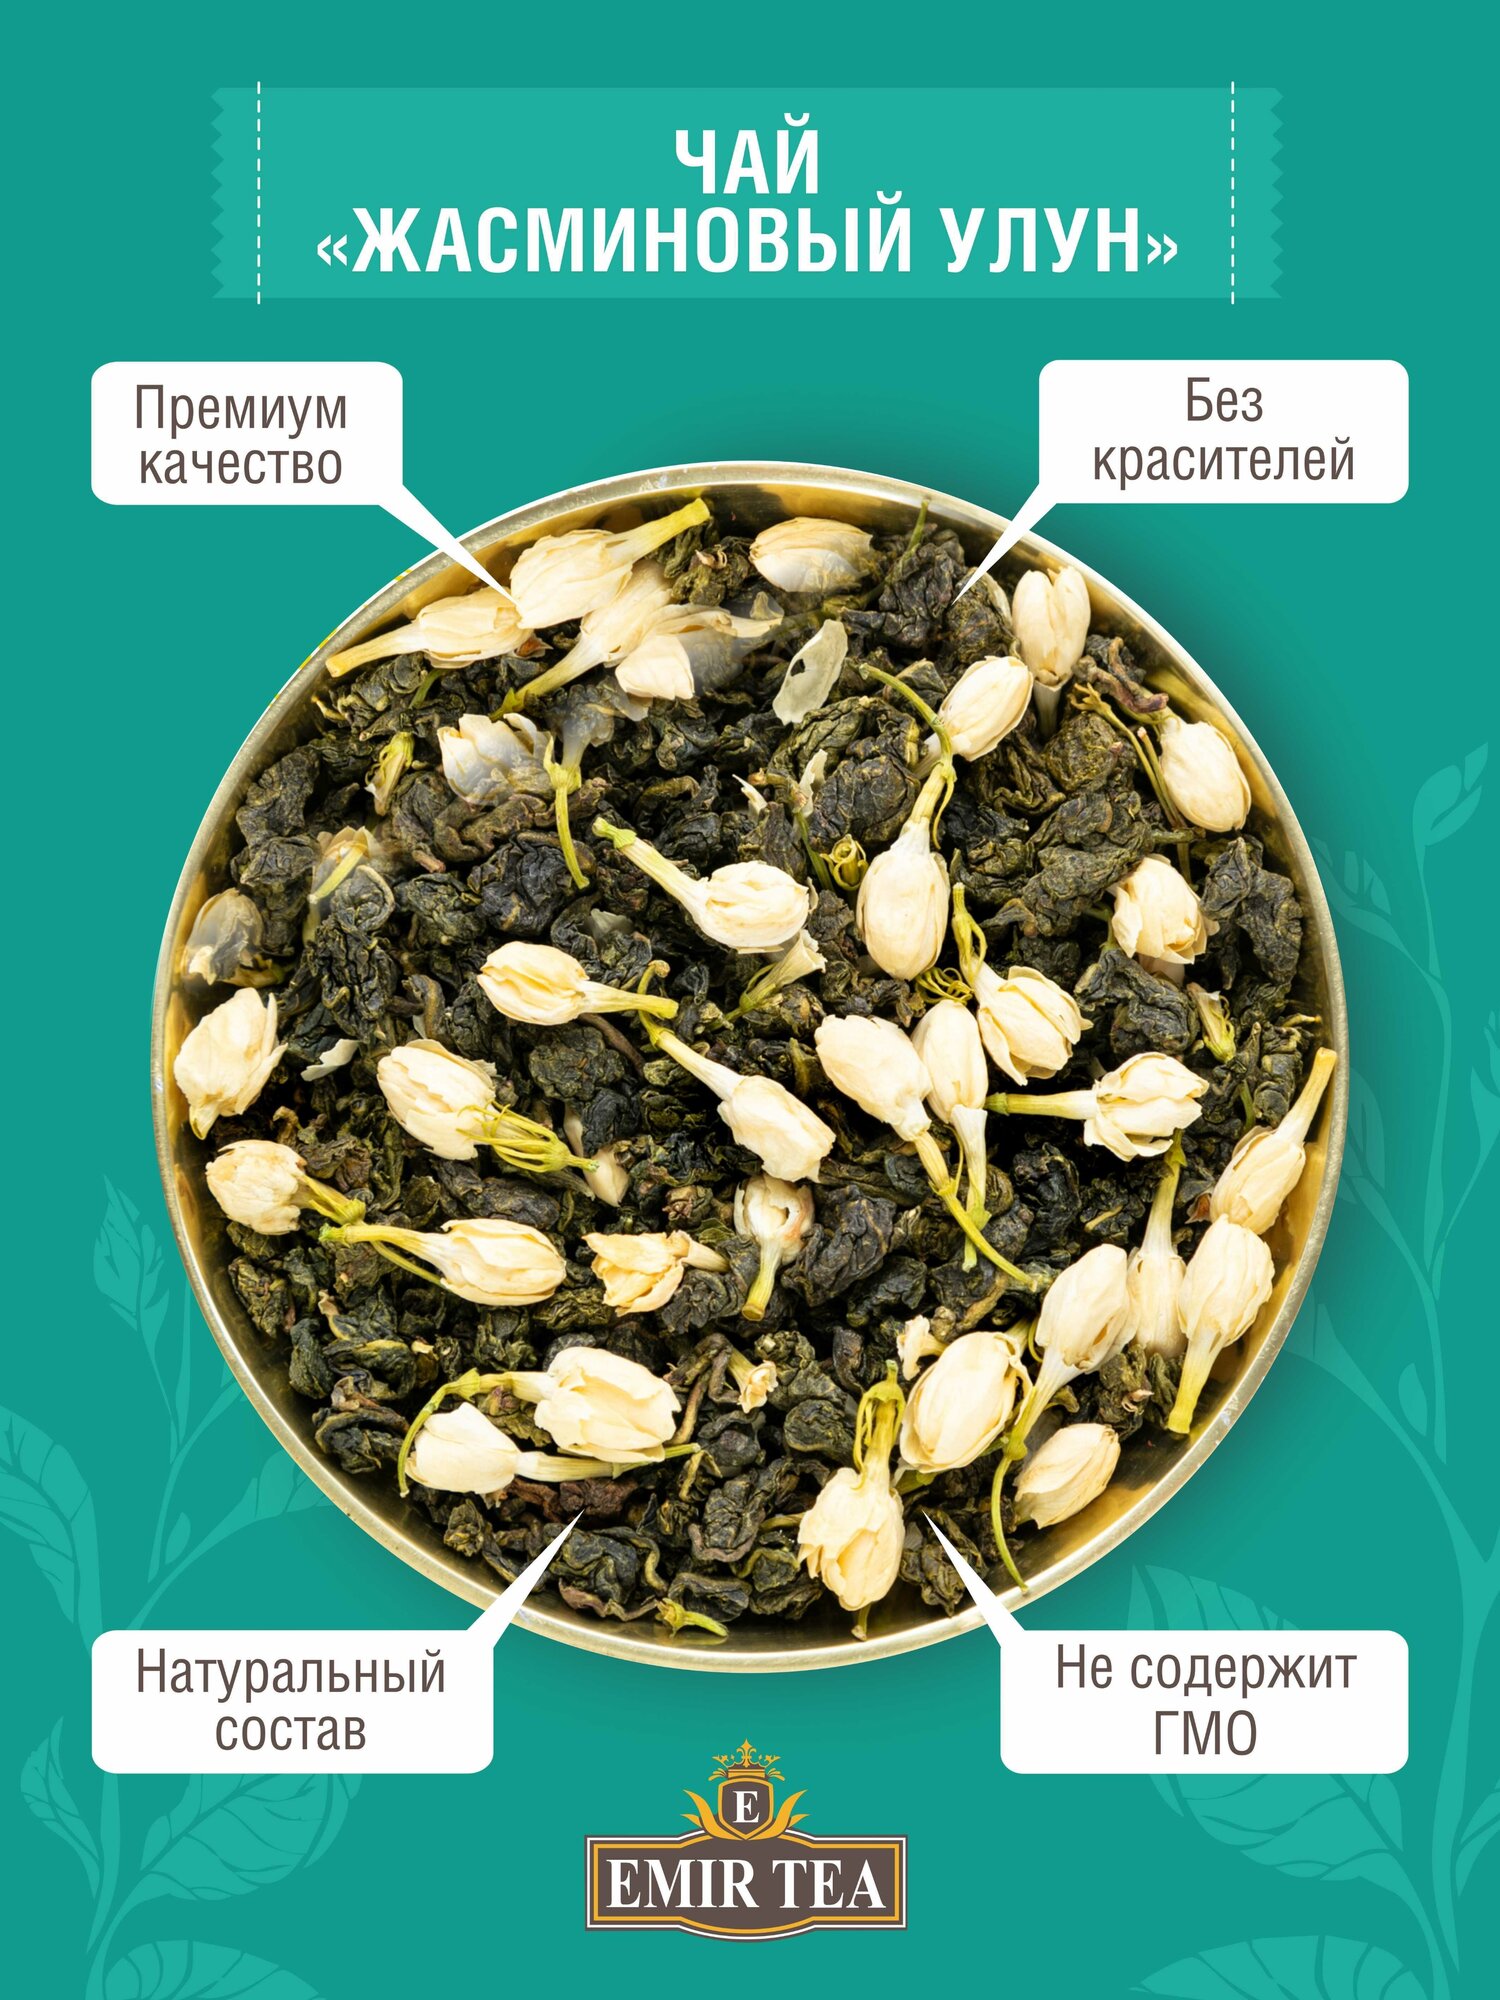 EMIR TEA Зеленый чай рассыпной листовой "Жасминовый улун" натуральный китайский, 100 гр. - фотография № 1